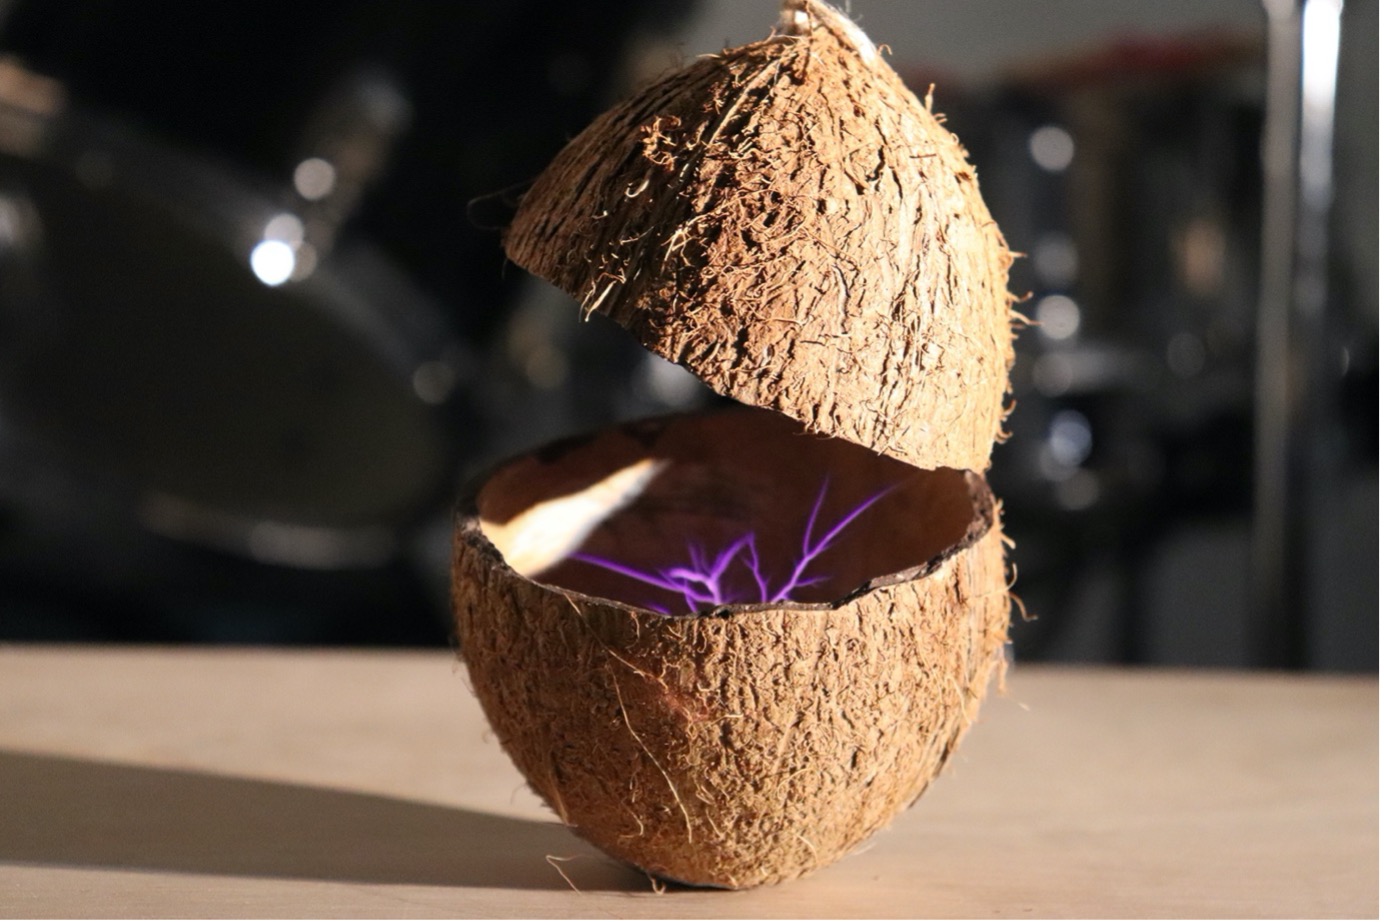 MA Fine Art sculpture by Johann Don-Daniel showing a split coconut with a purple electrical flash inside it.